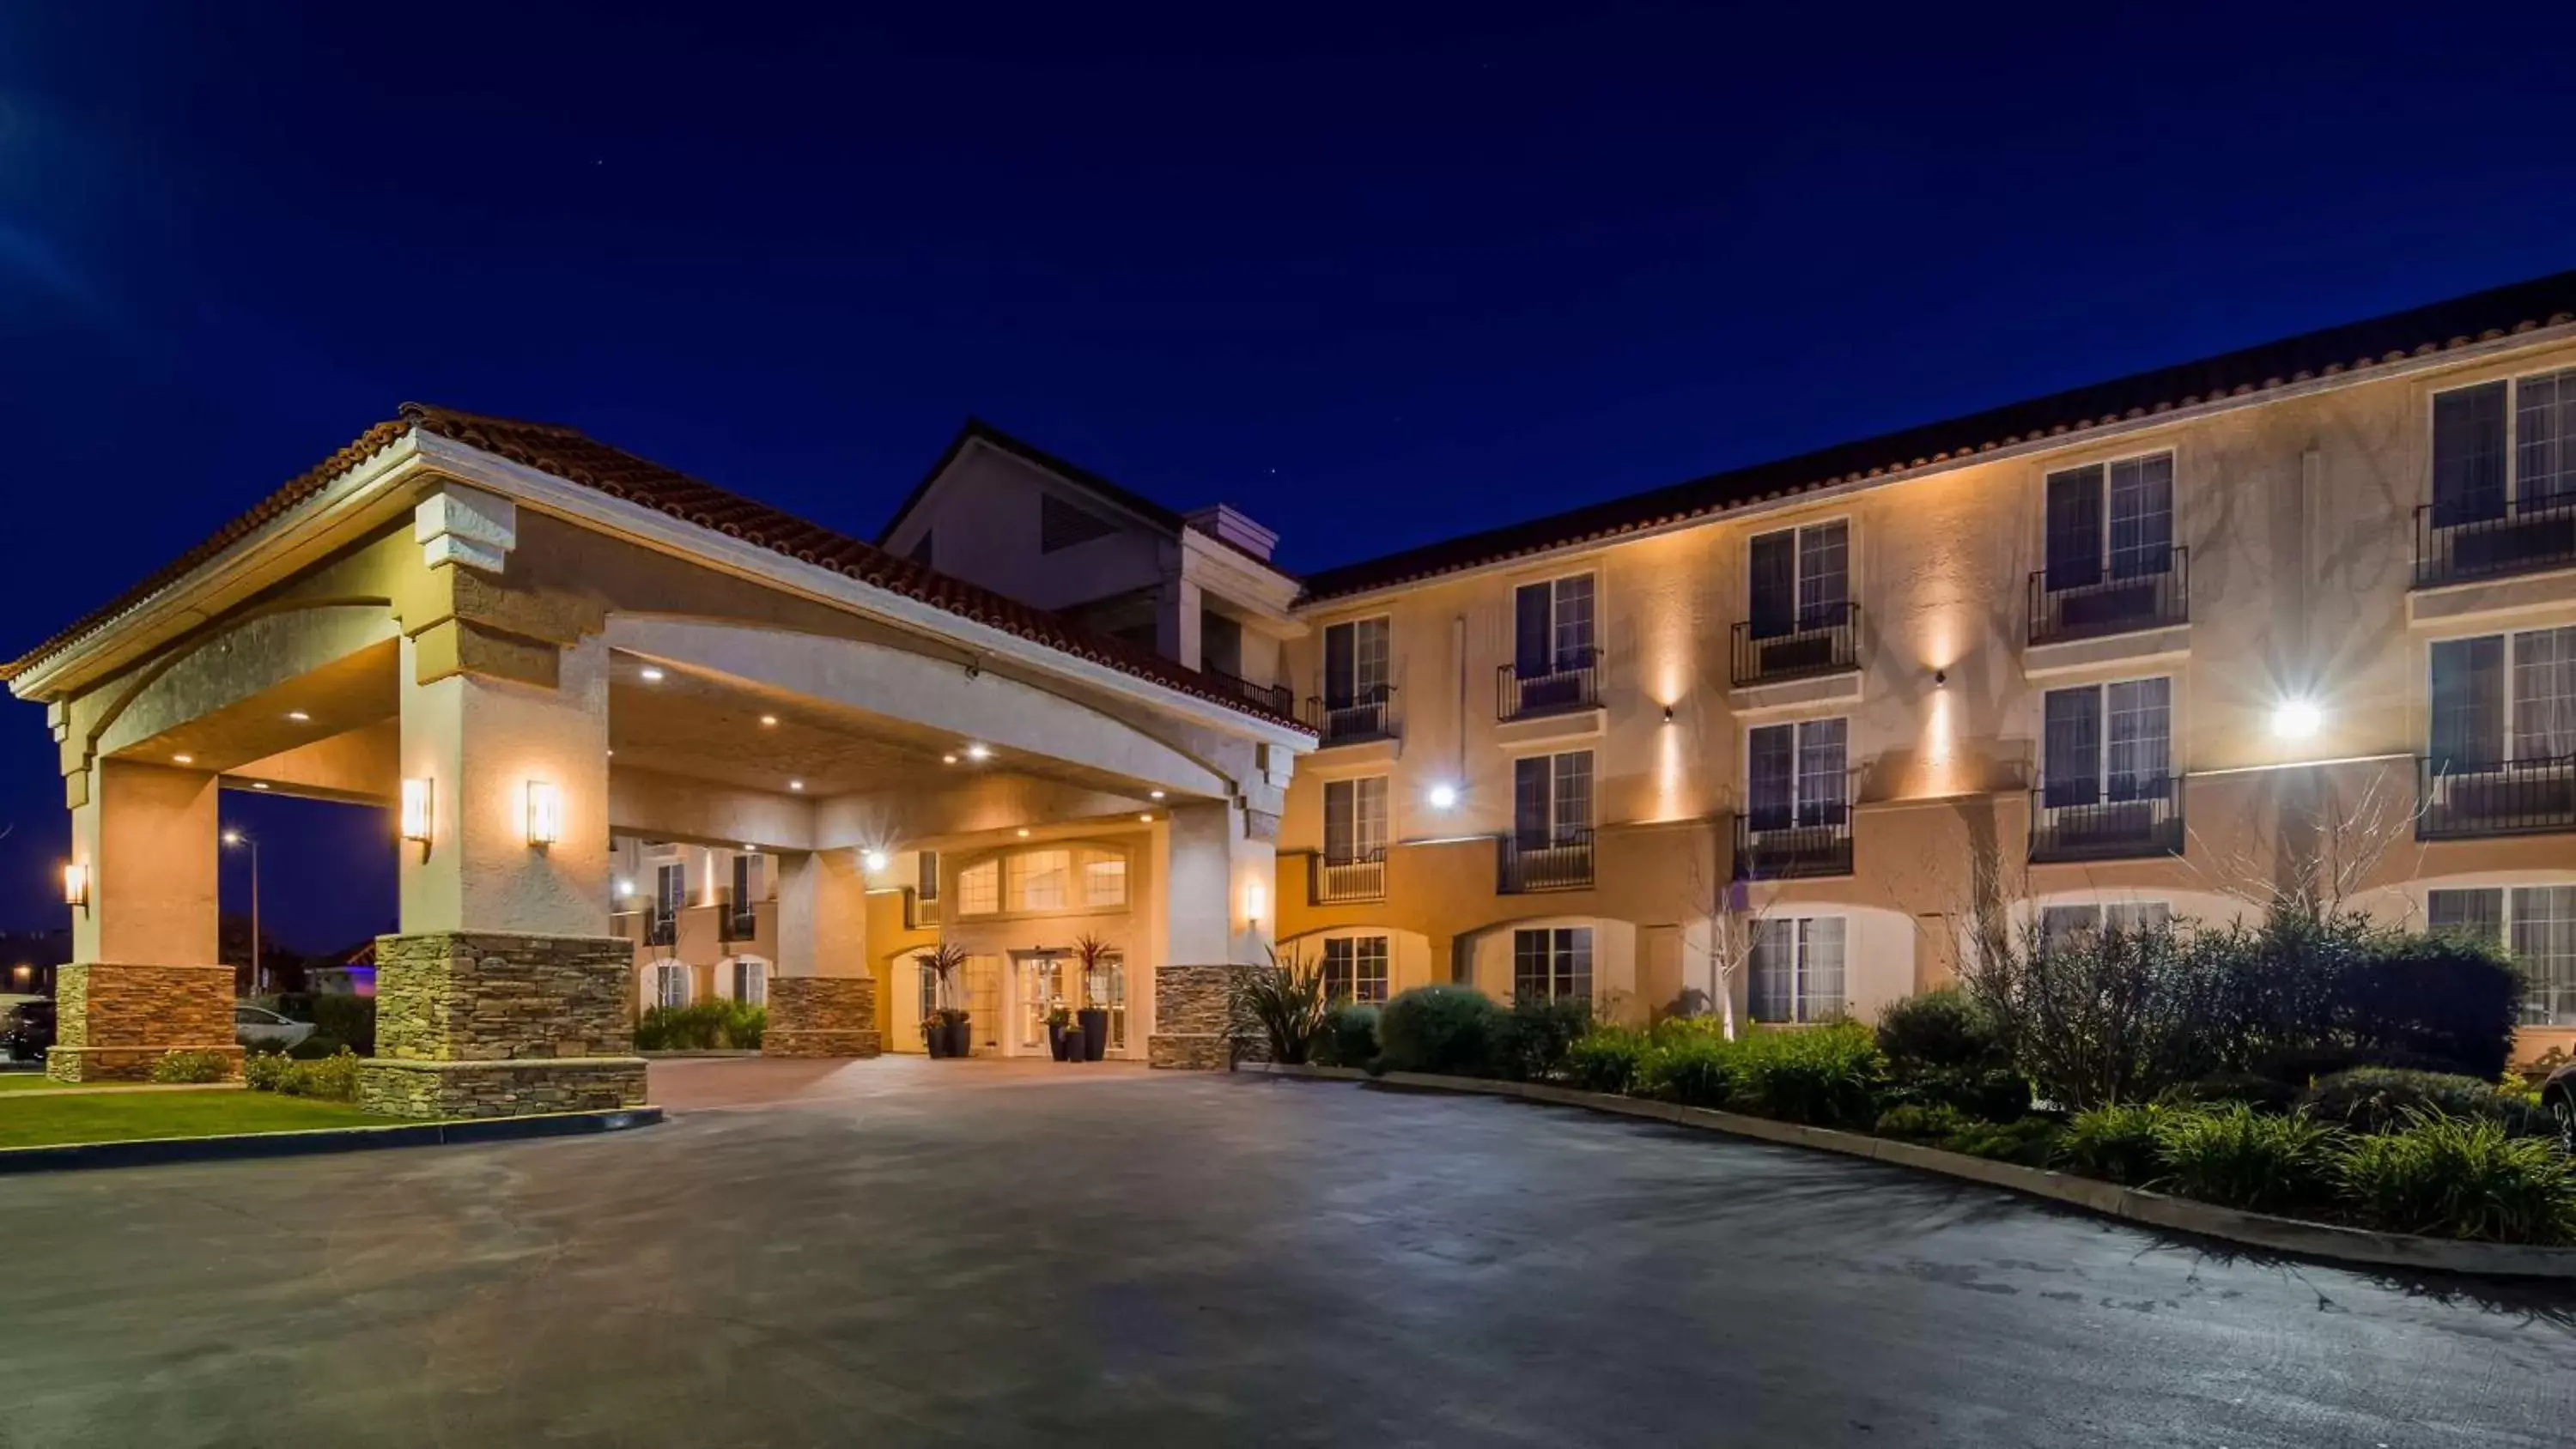 Property Building in Best Western Plus Salinas Valley Inn & Suites